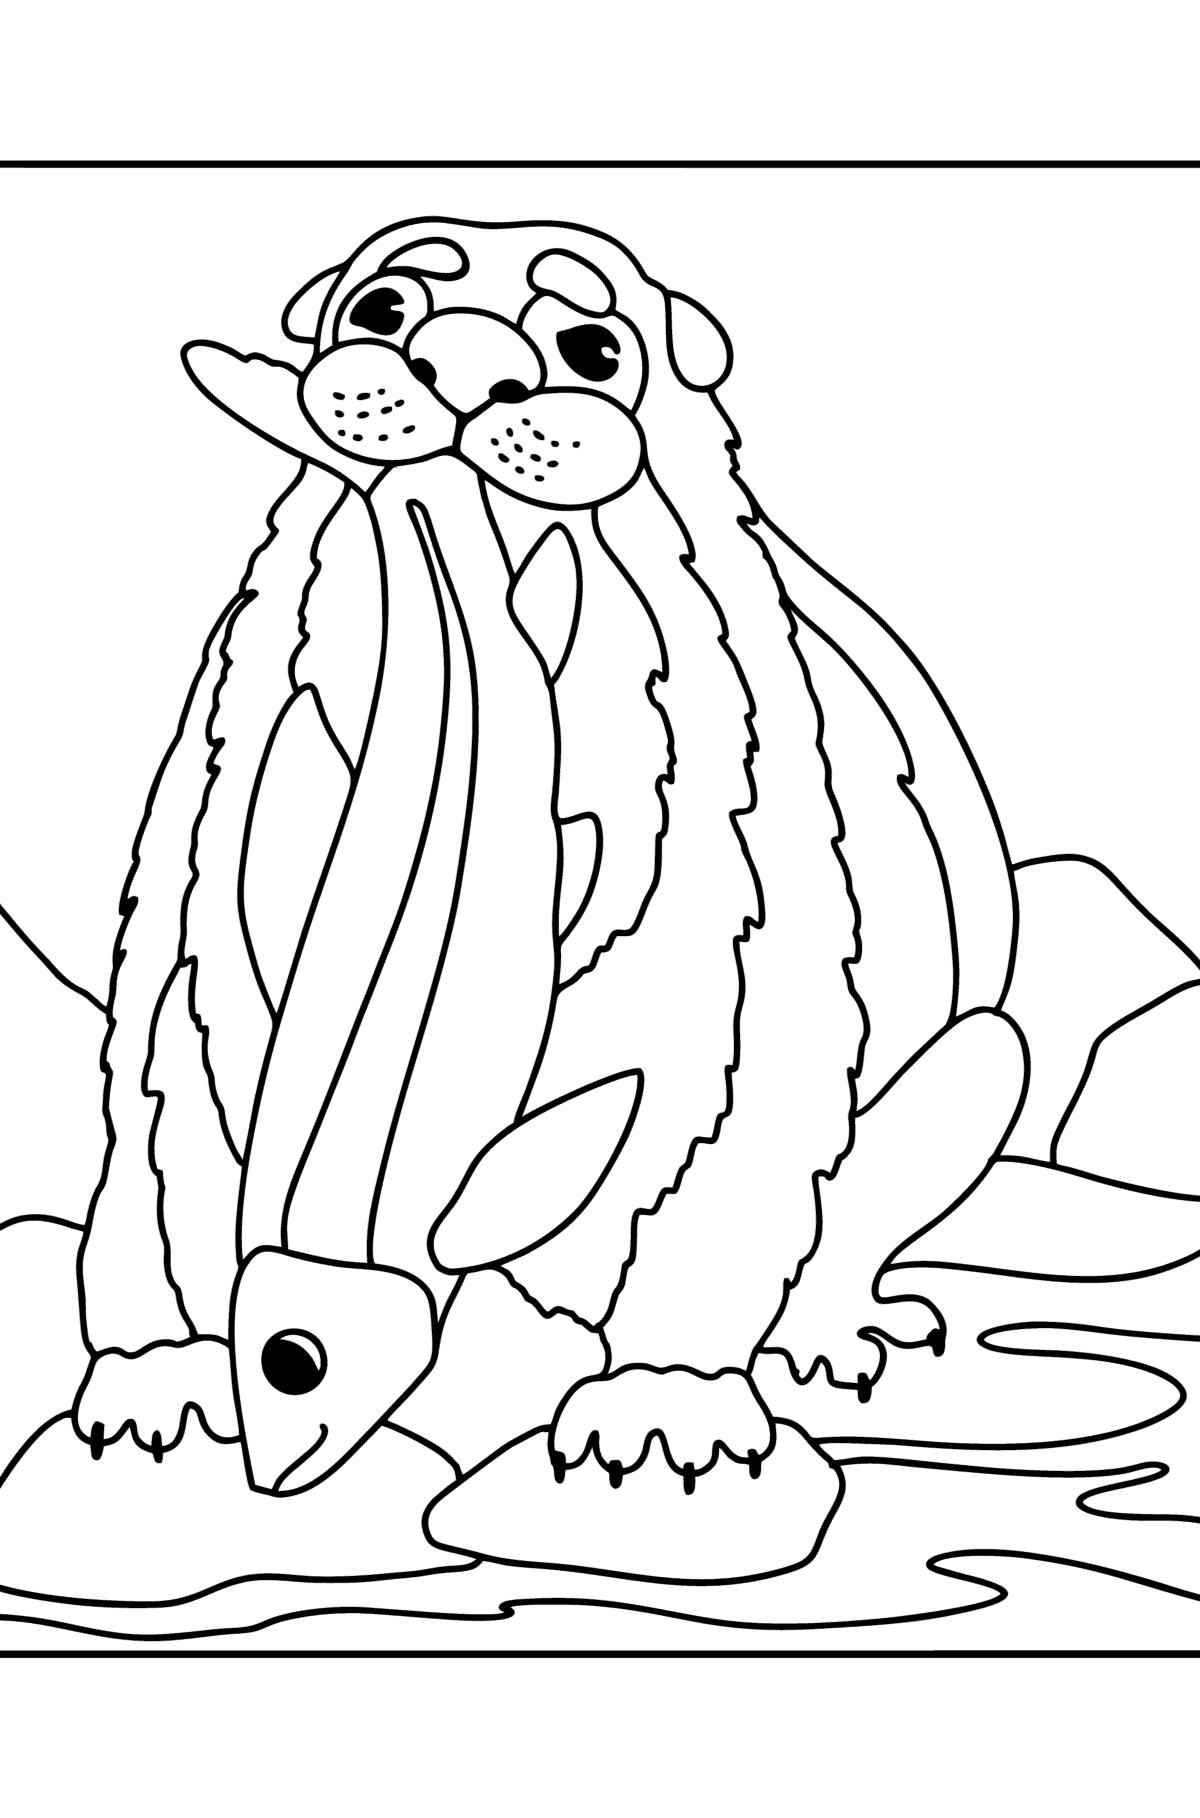 Desenho de Lontra do mar para colorir - Imagens para Colorir para Crianças